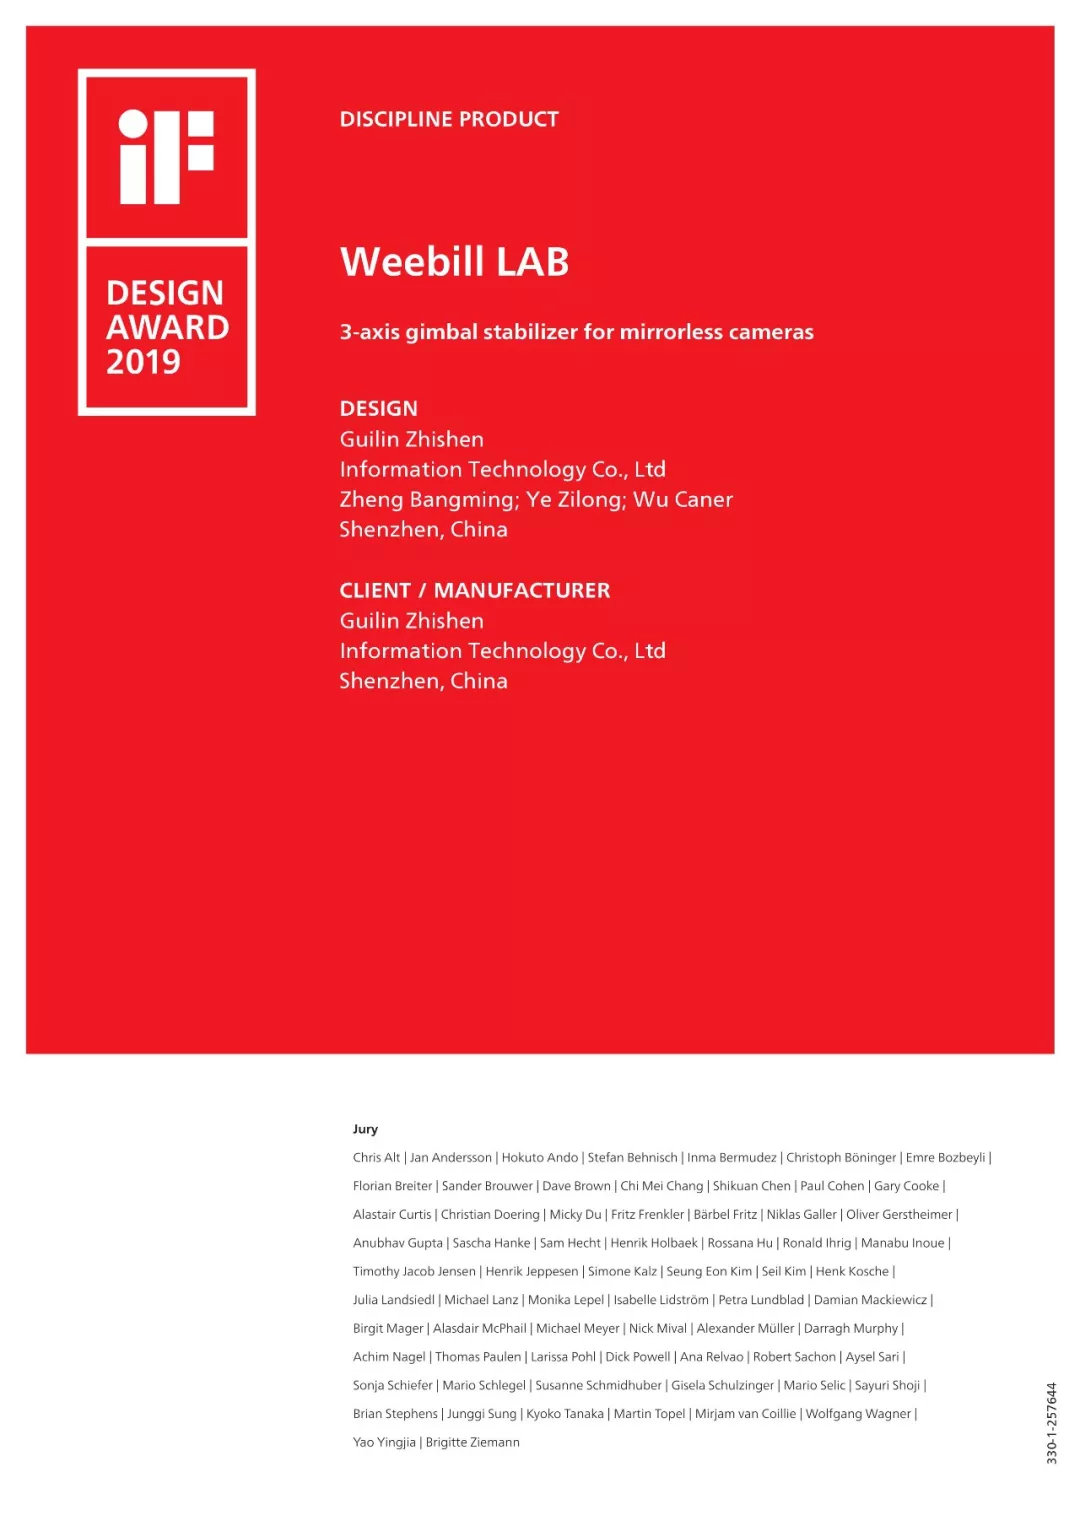 WEEBILL LAB稳定器获奖证书